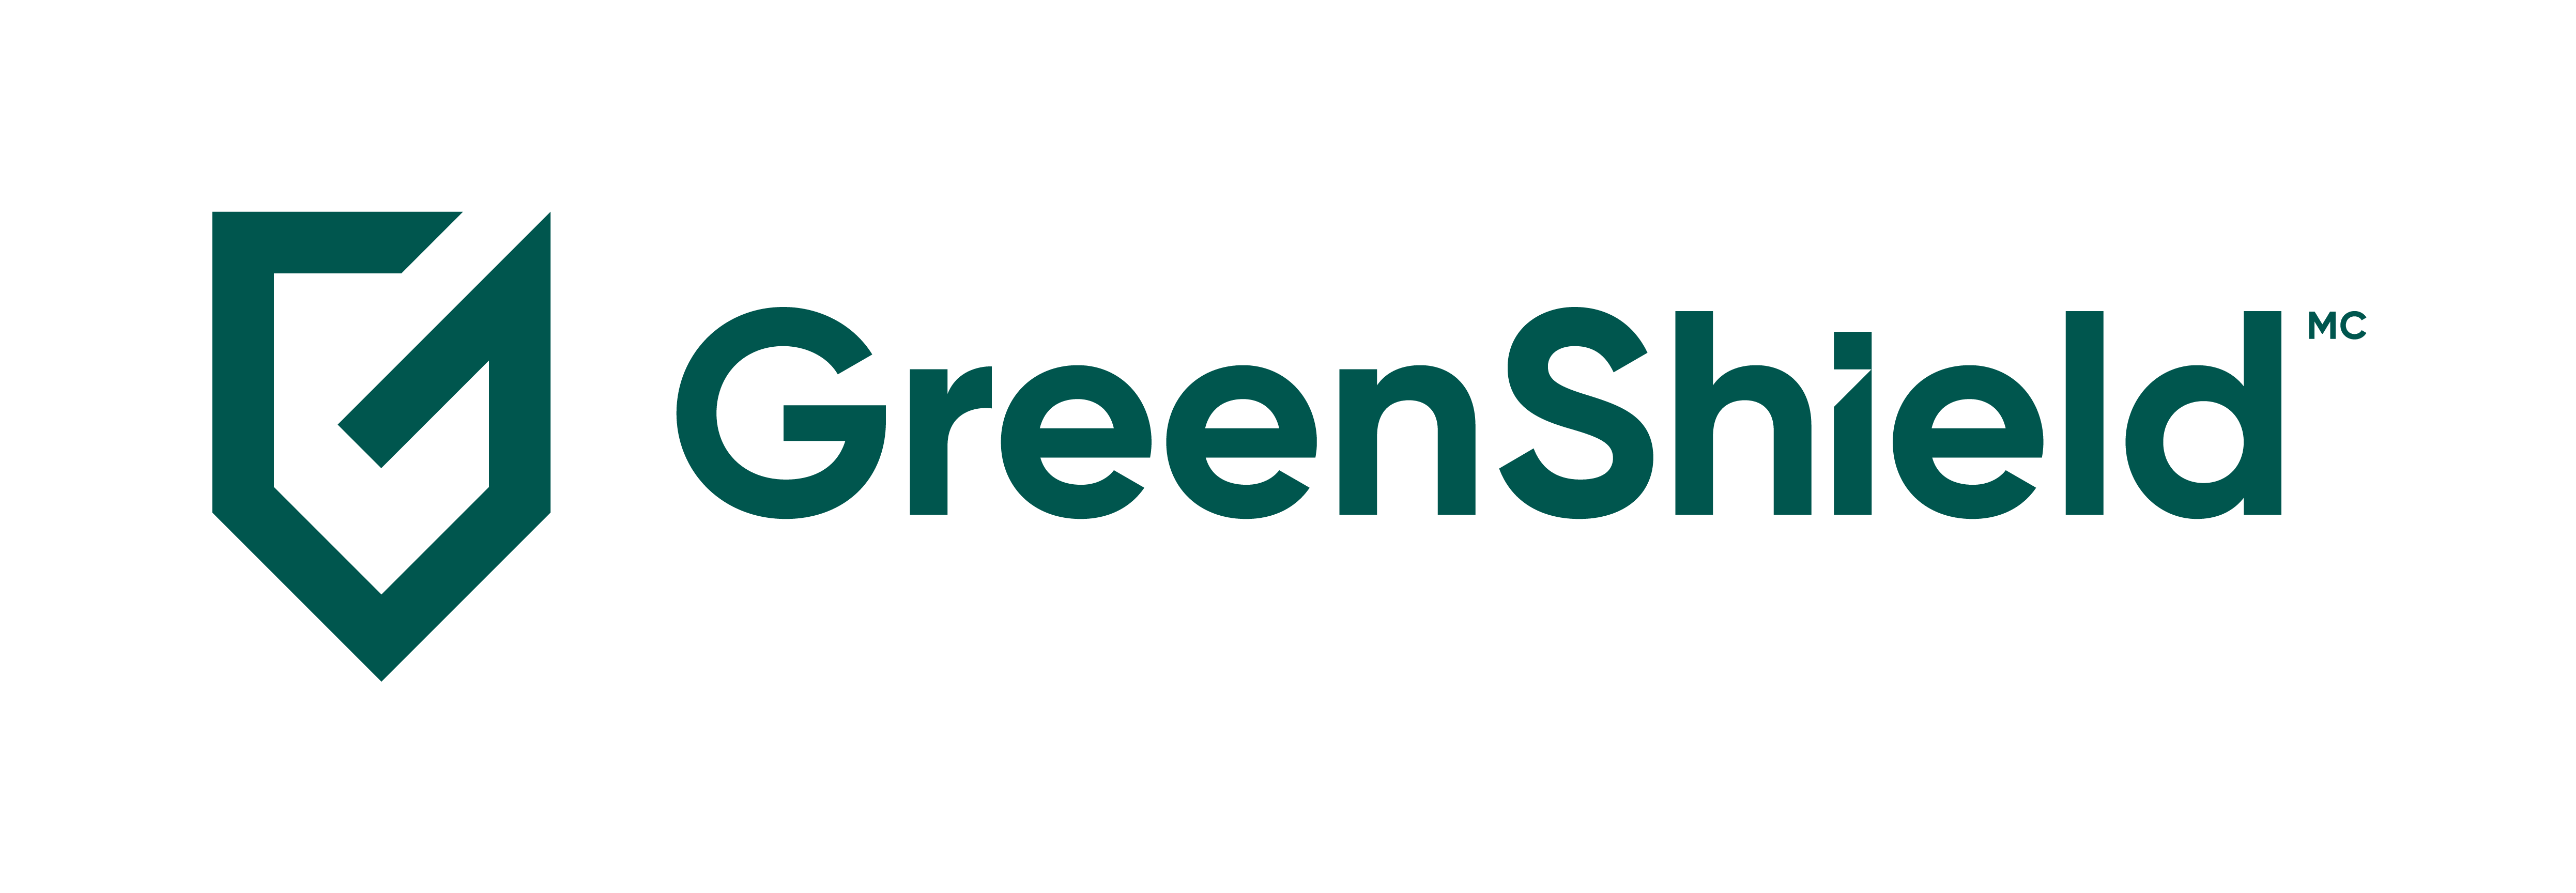 French GreenShield logo